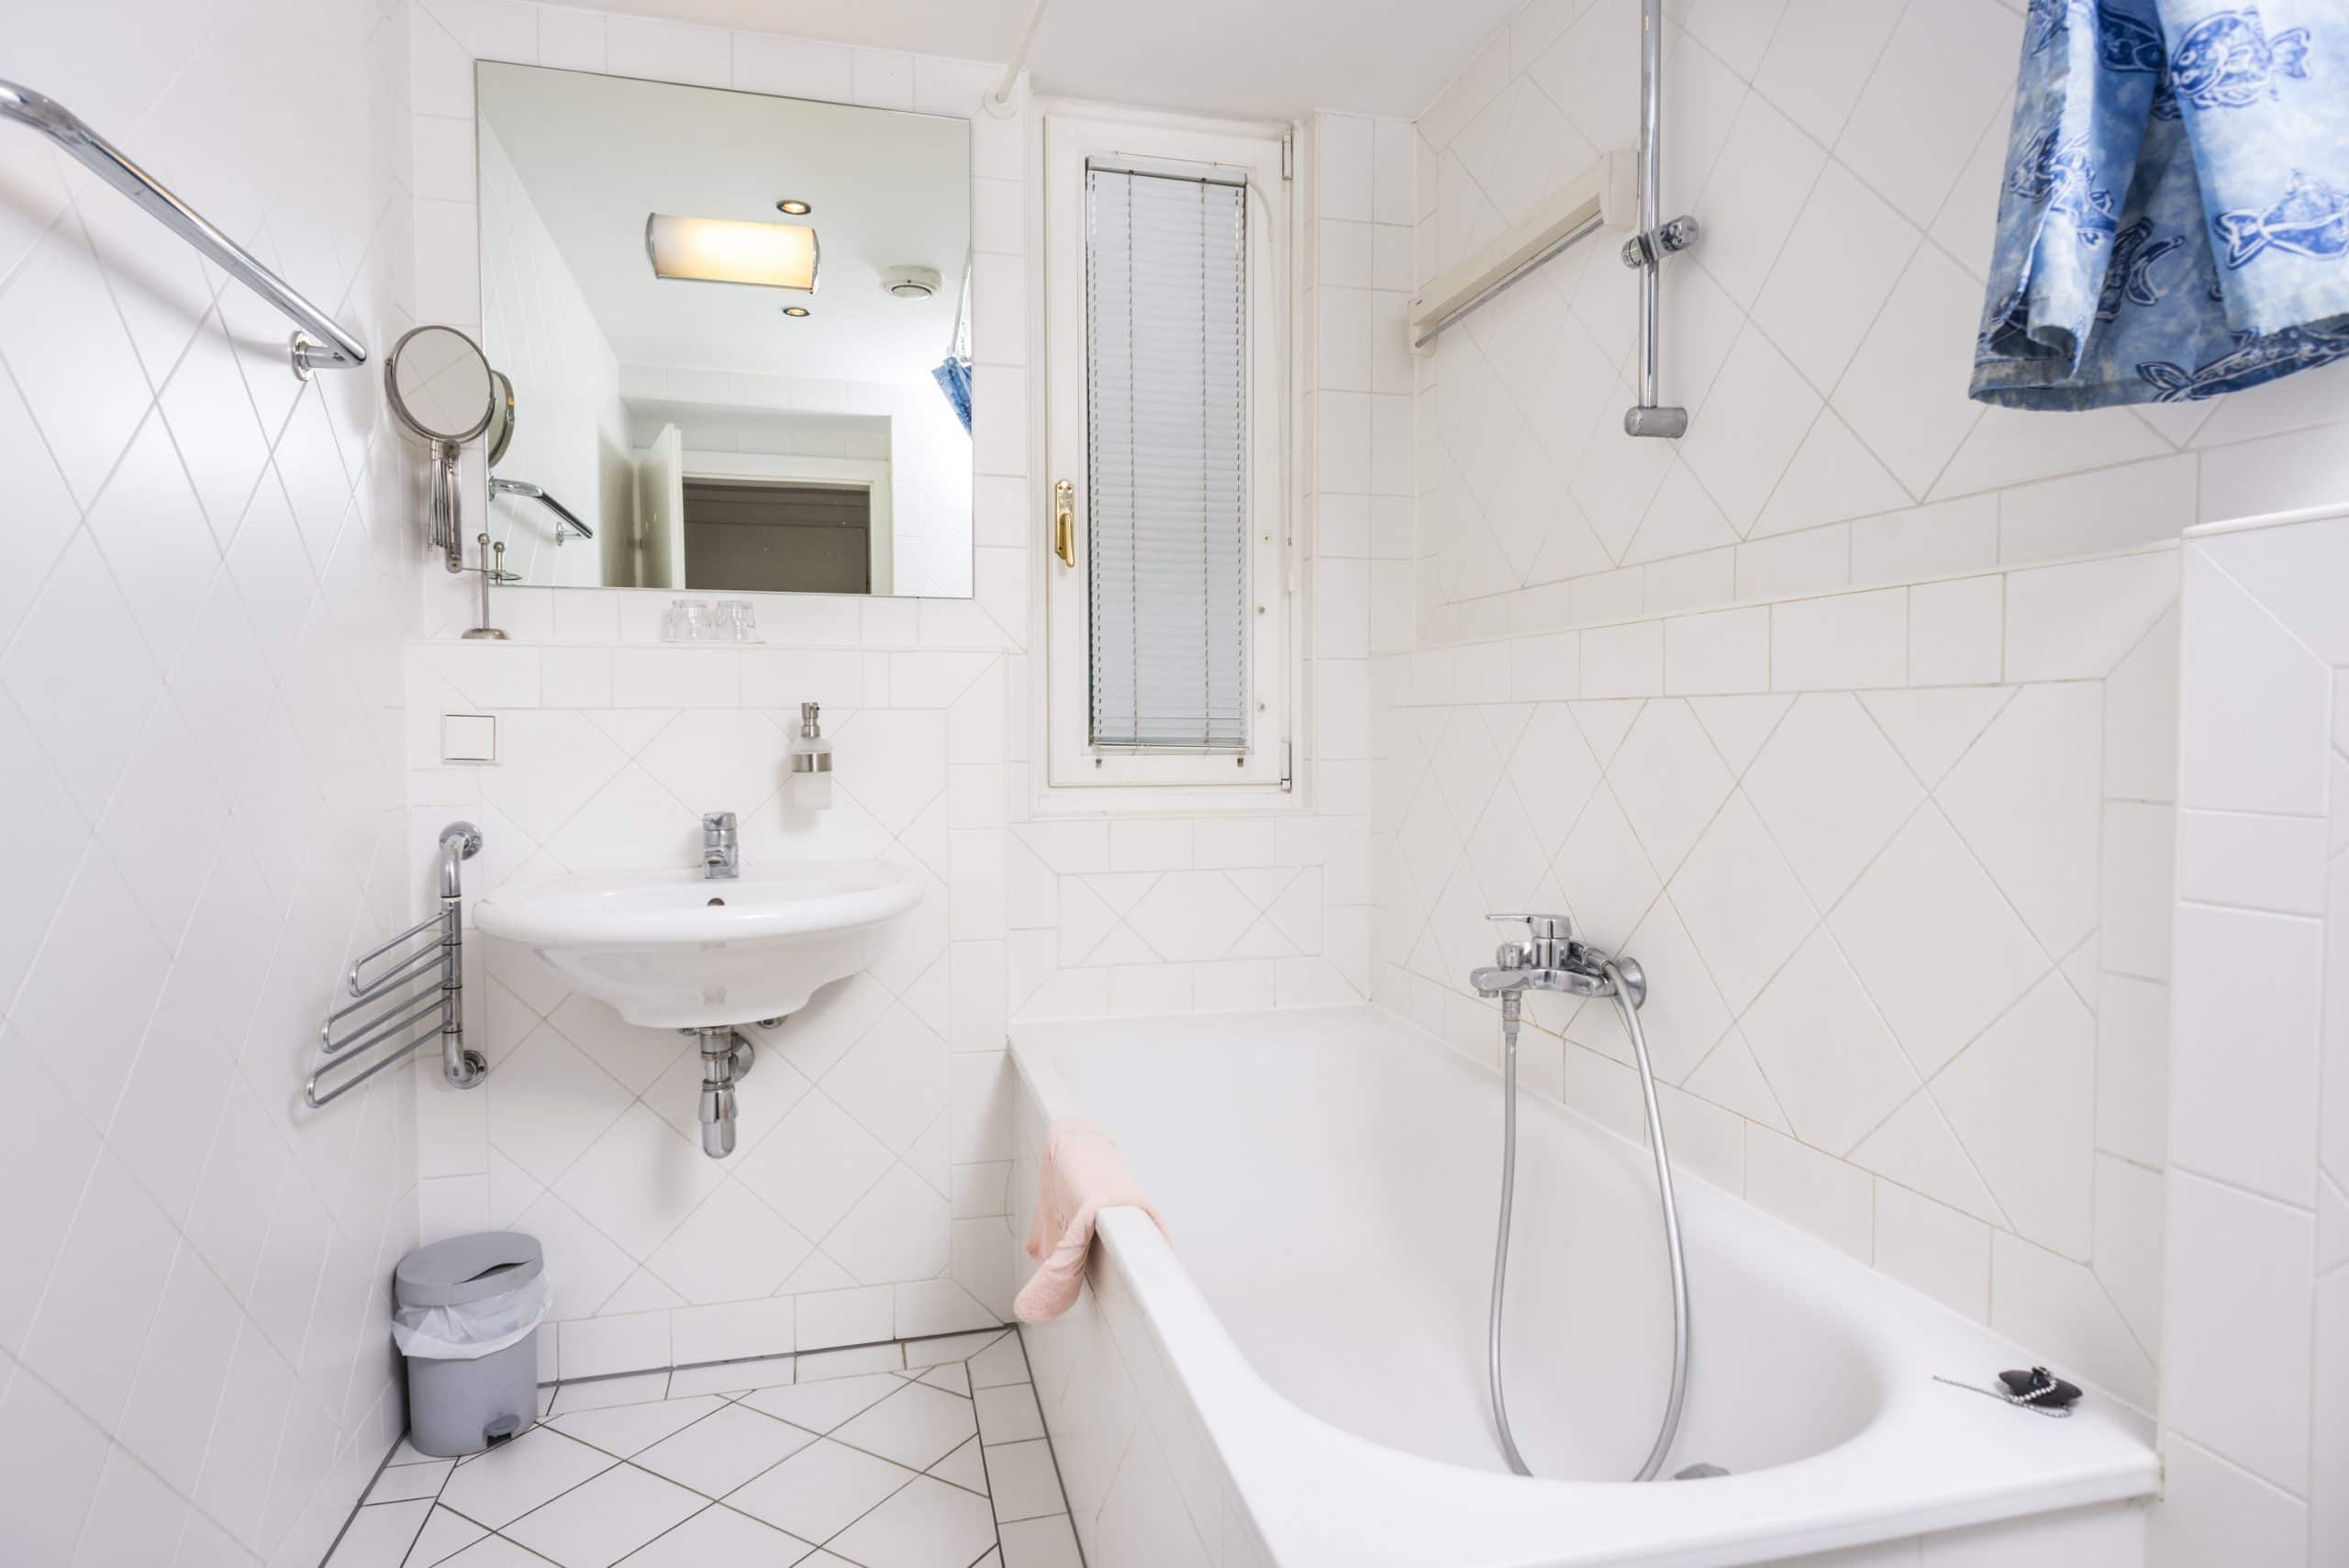 Apartment R26 bathroom with bathtub